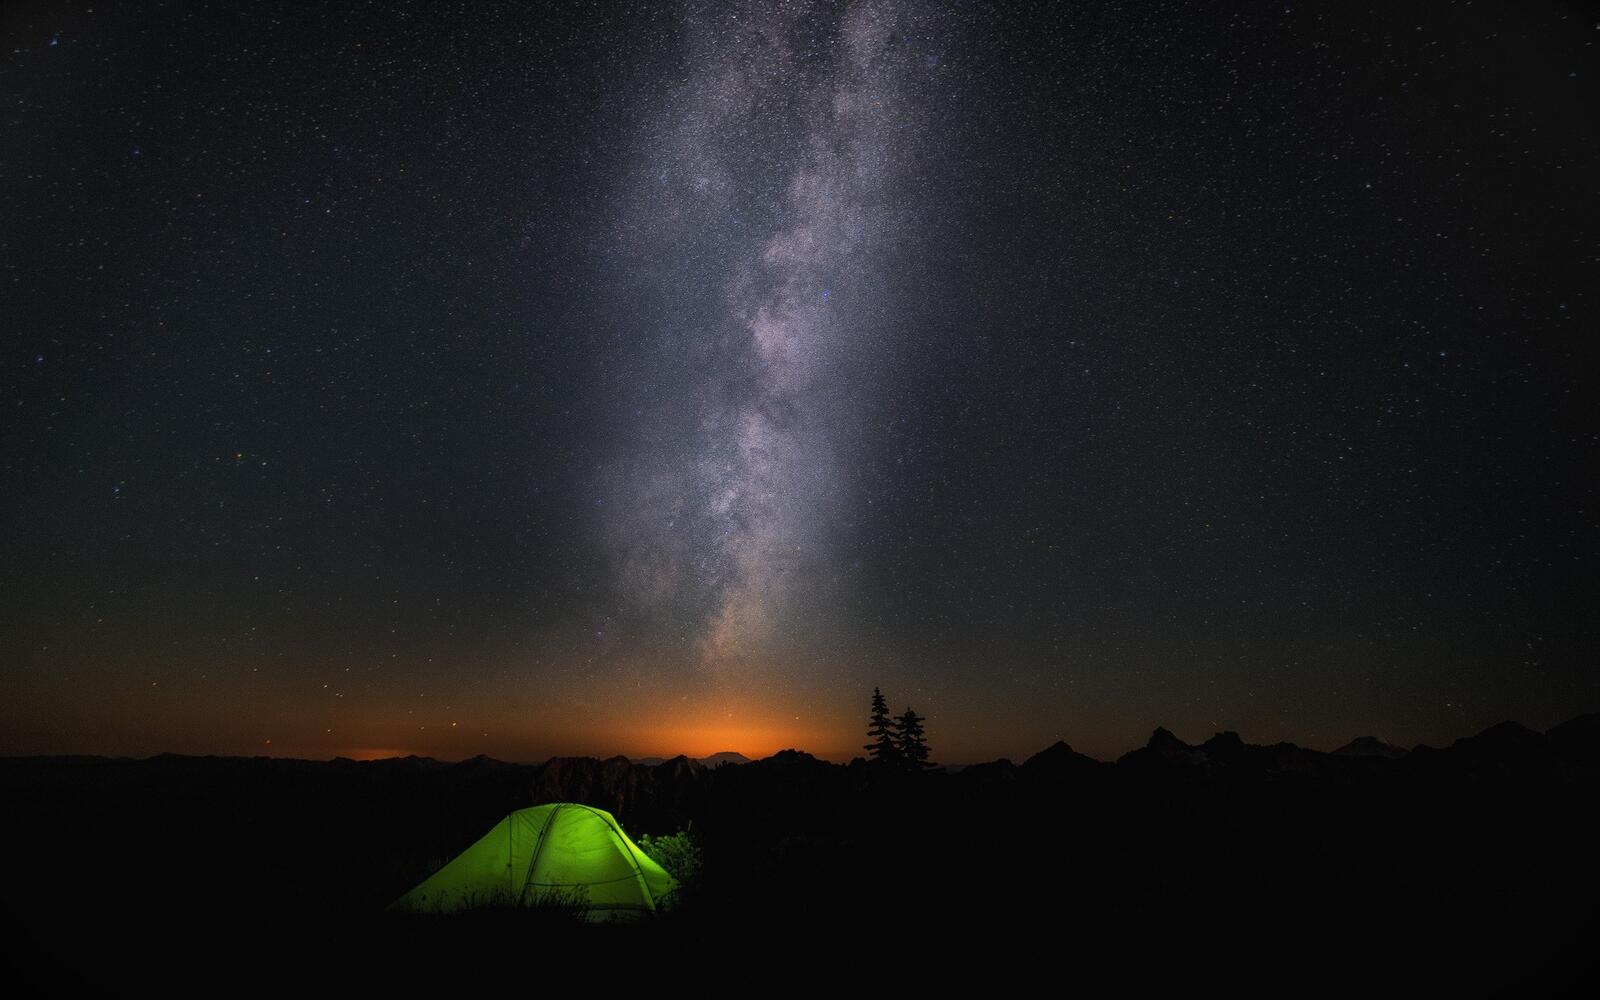 Бесплатное фото Ночное созвездие над туристической палаткой